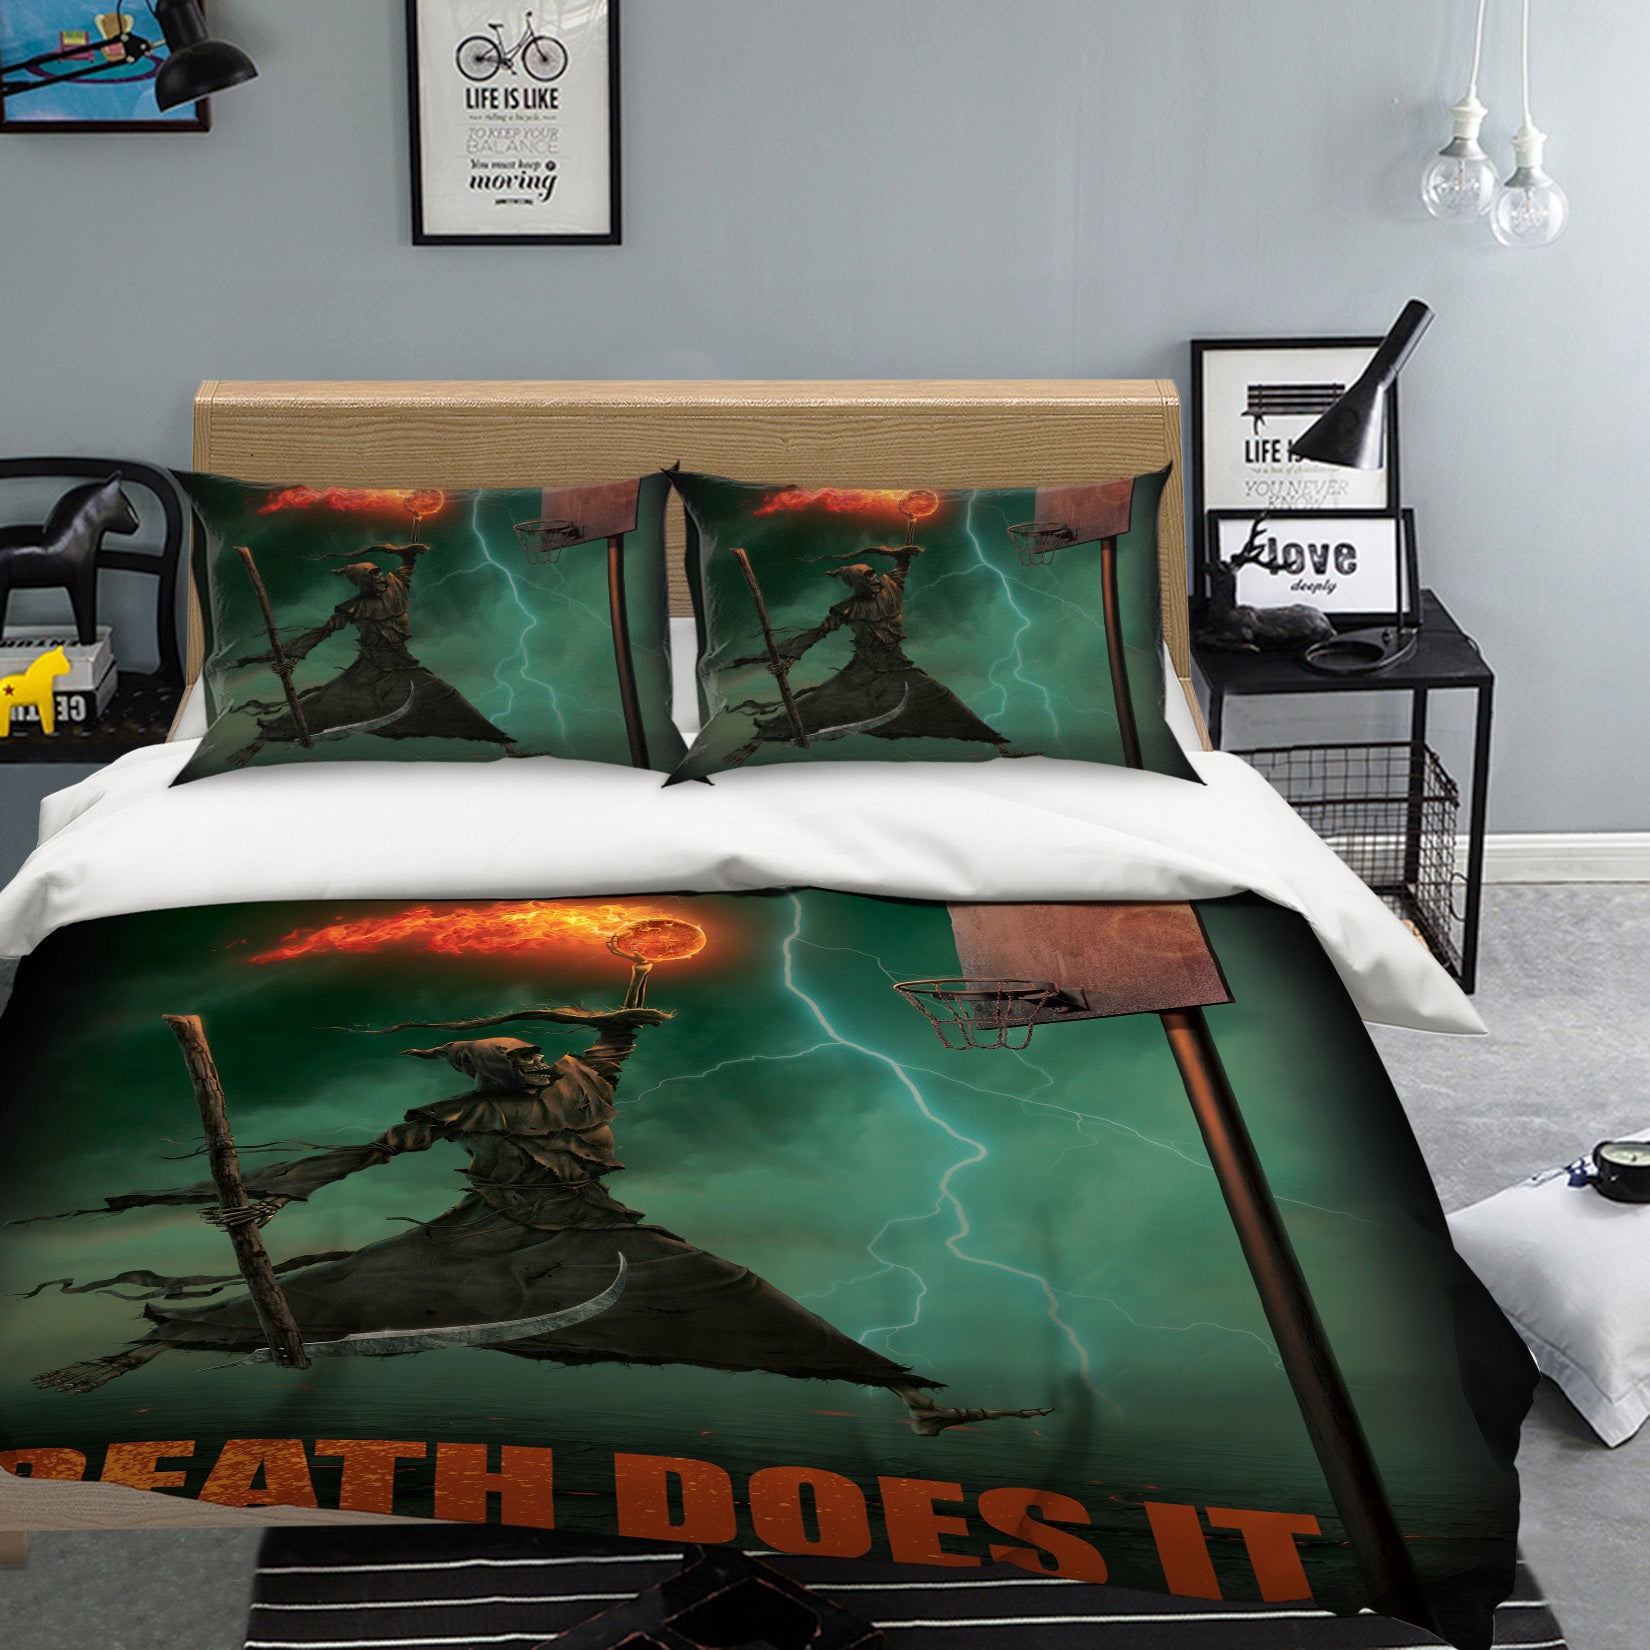 3D Death Does It 037 Bed Pillowcases Quilt Exclusive Designer Vincent